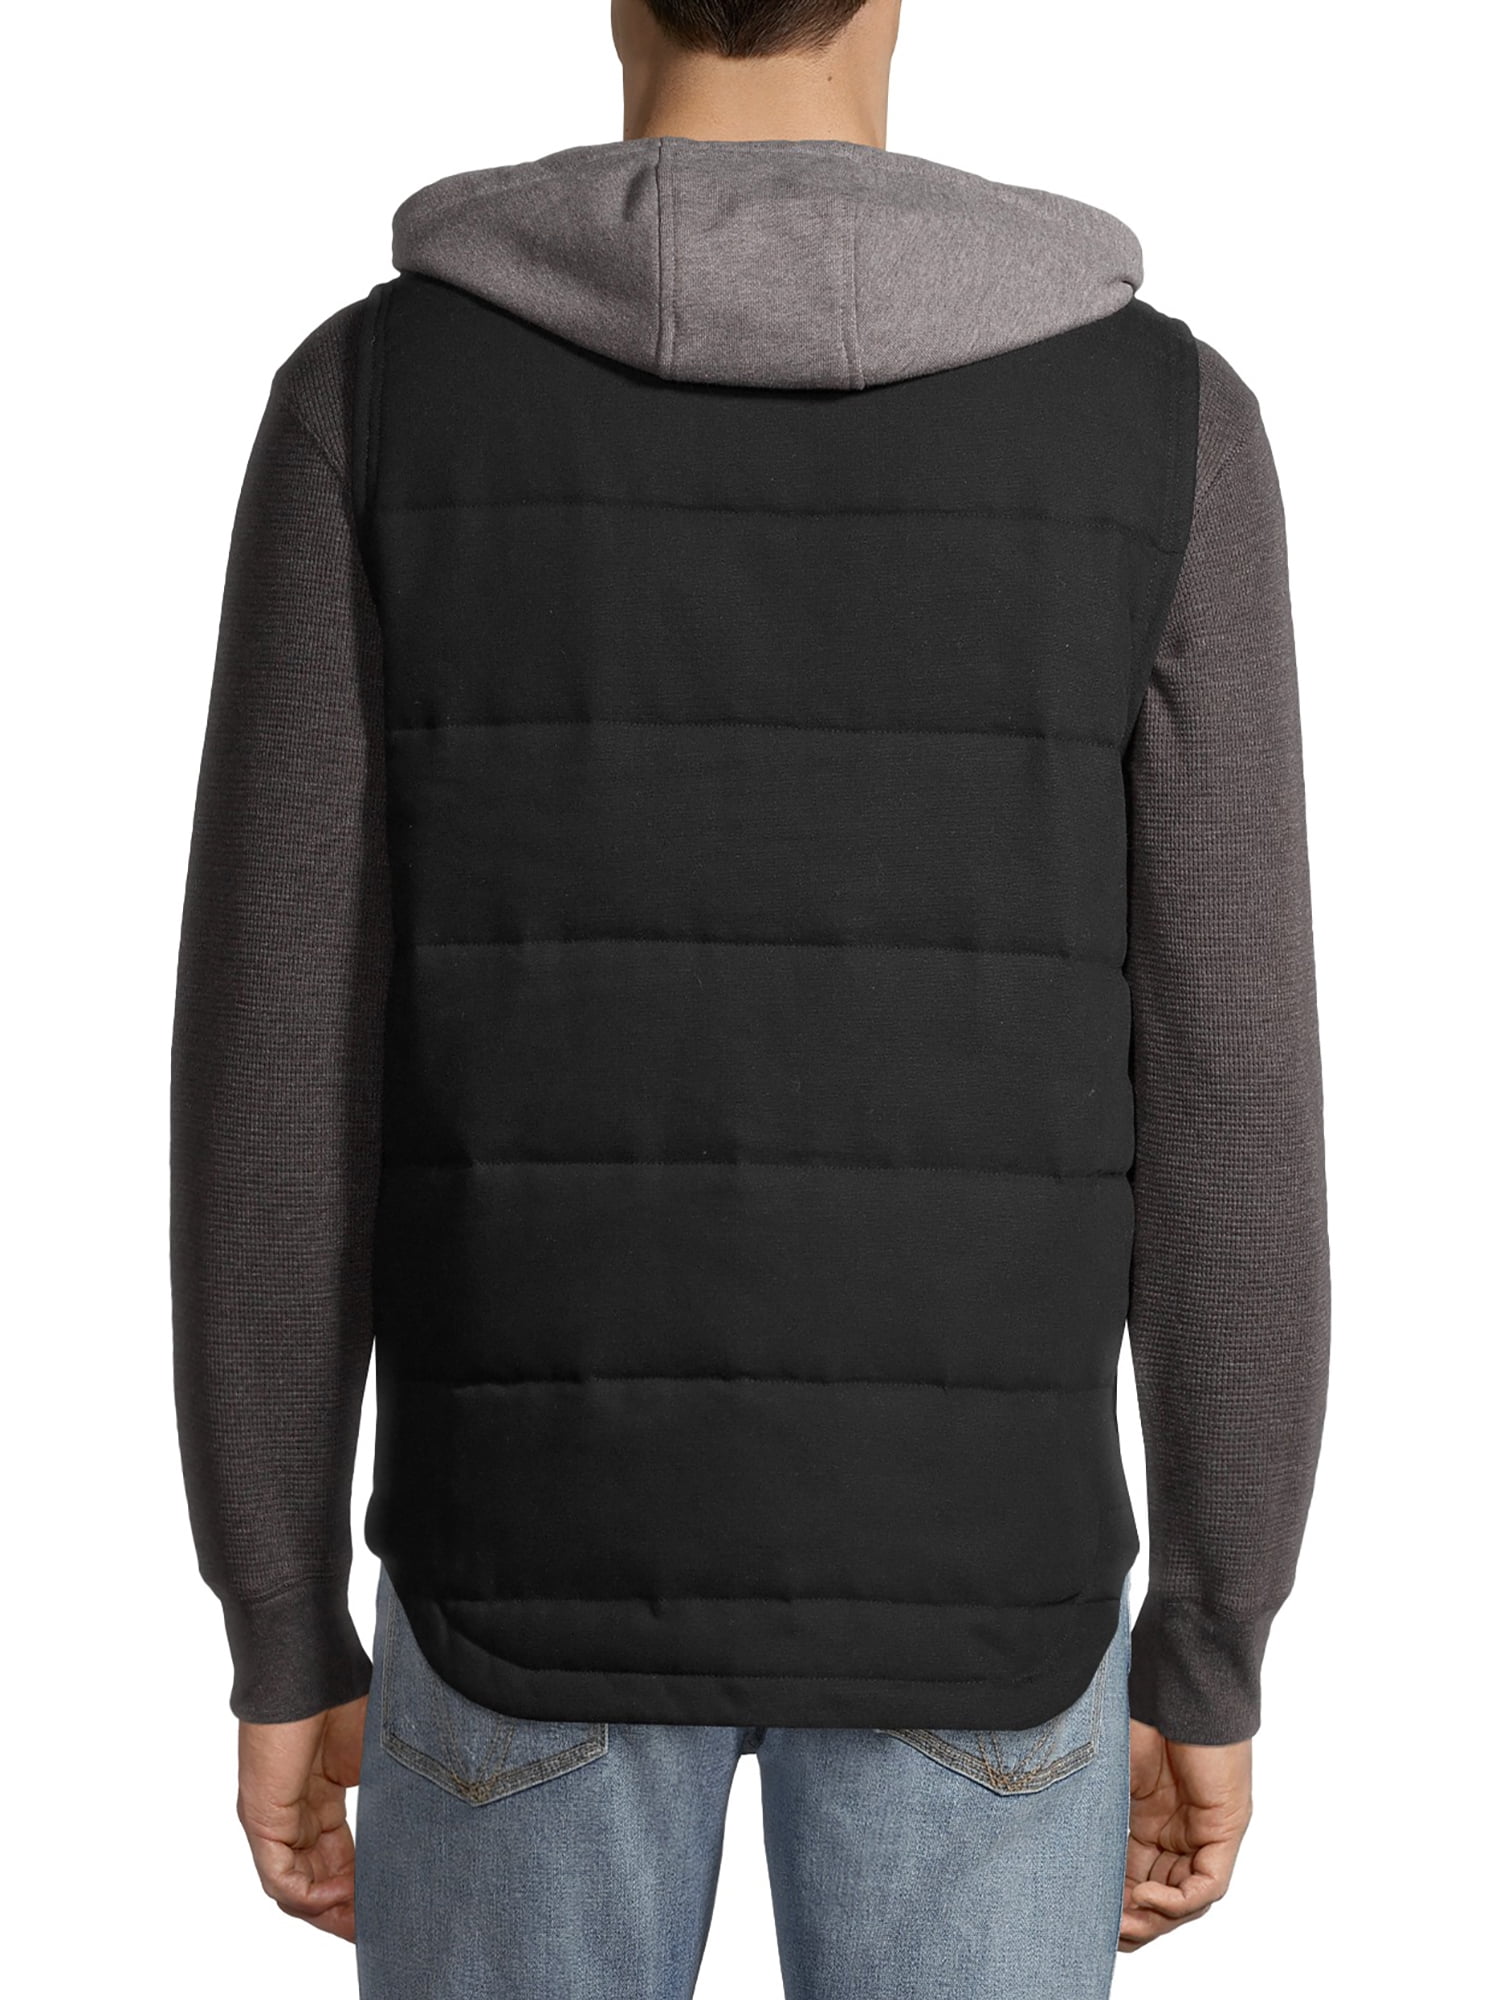 Wrangler Workwear Men's Flex Work Vest with Comfort Fleece Hood -  